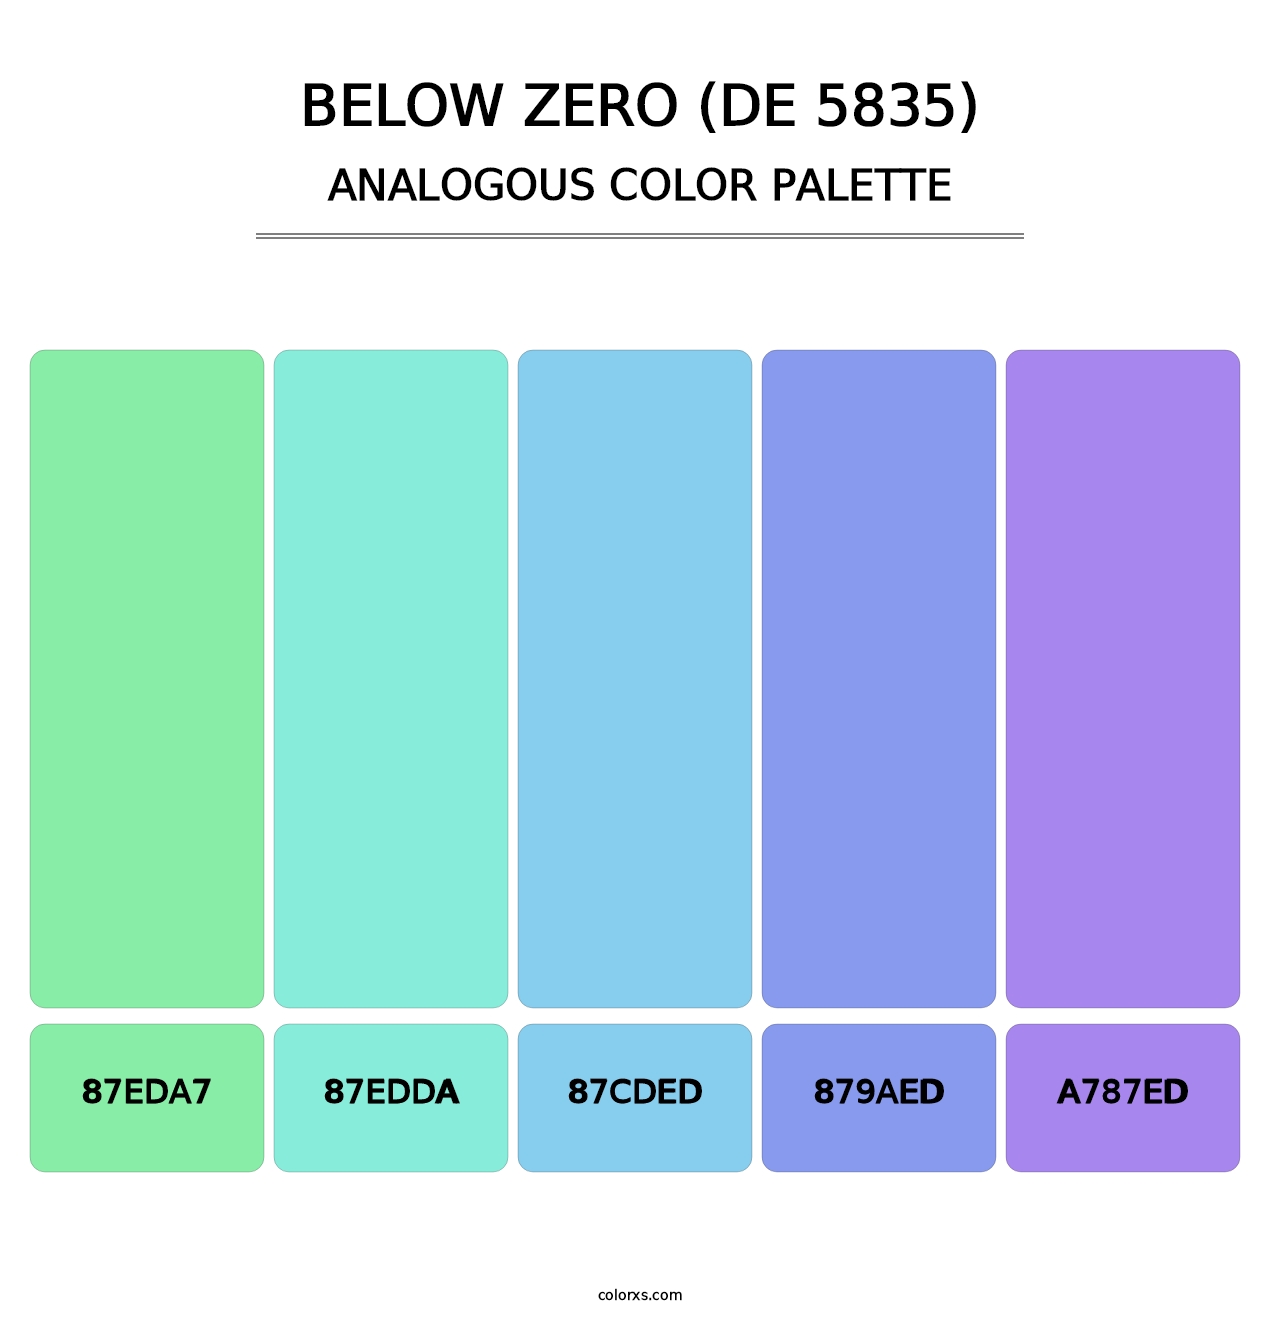 Below Zero (DE 5835) - Analogous Color Palette